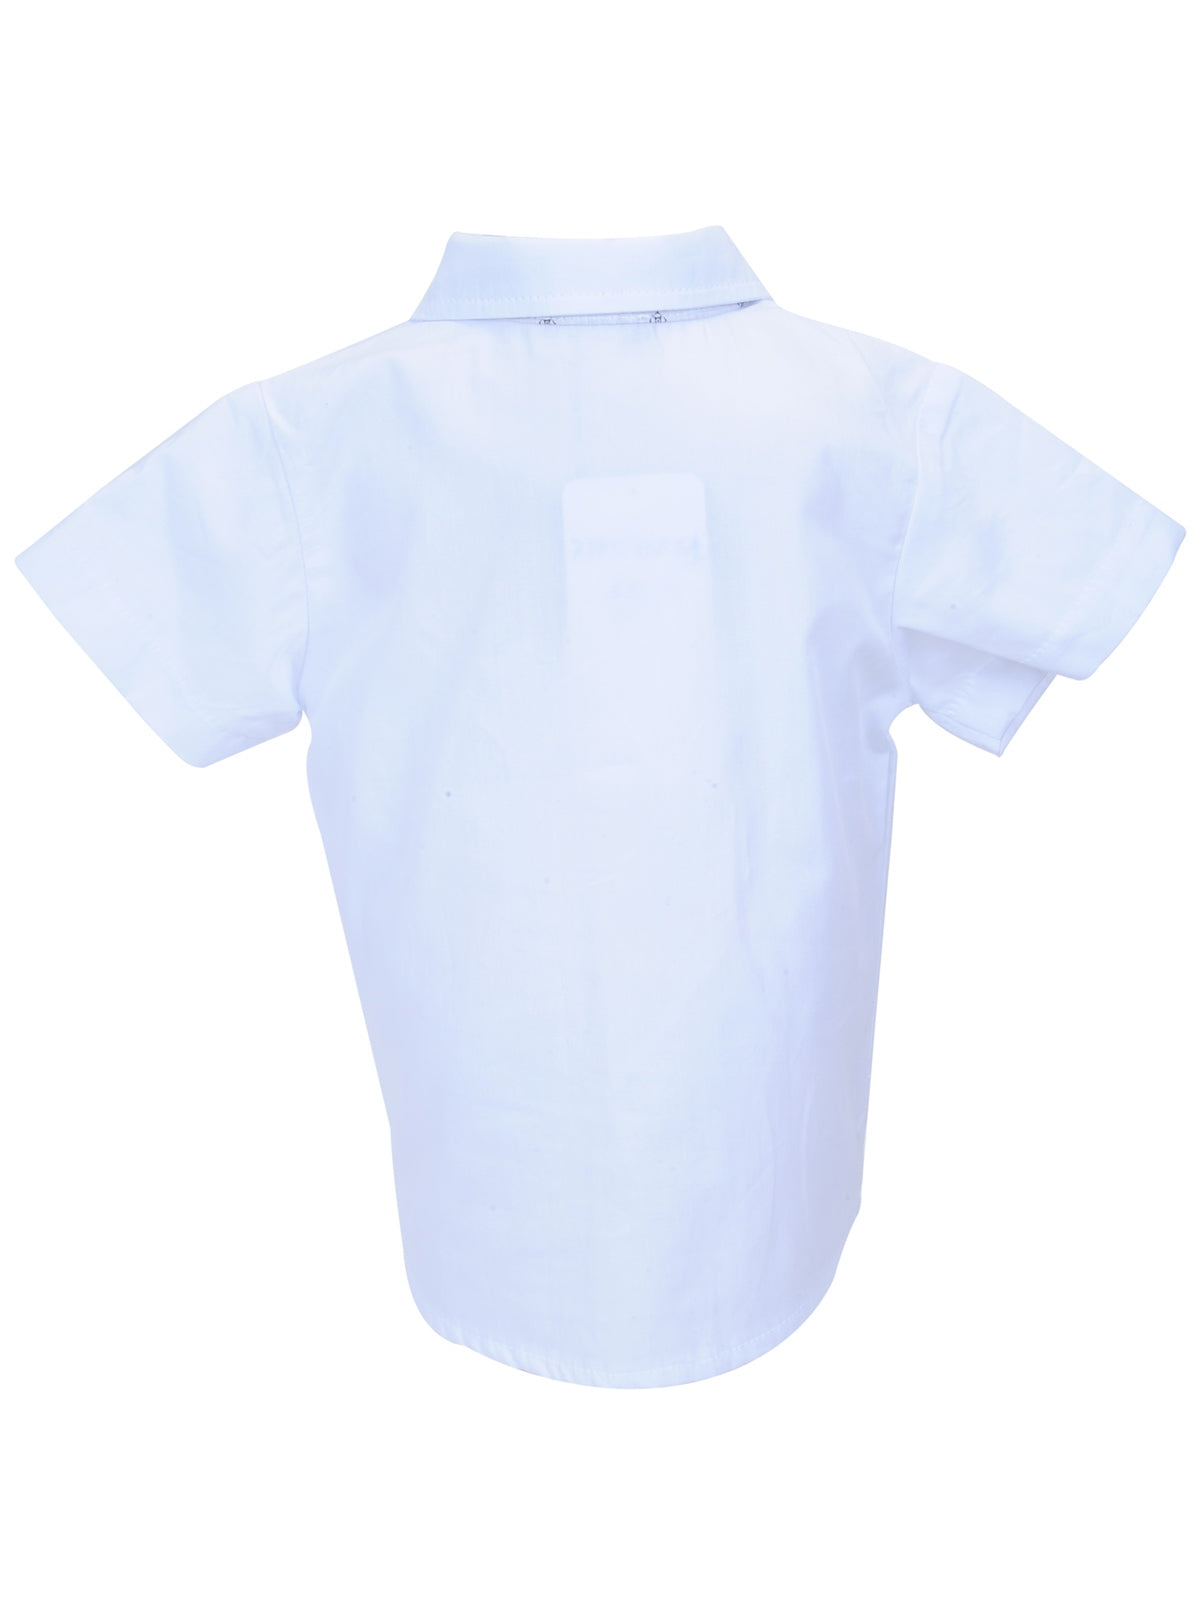 Erkek Bebek Beyaz Baskılı Gömlek (6ay-4yaş)-1